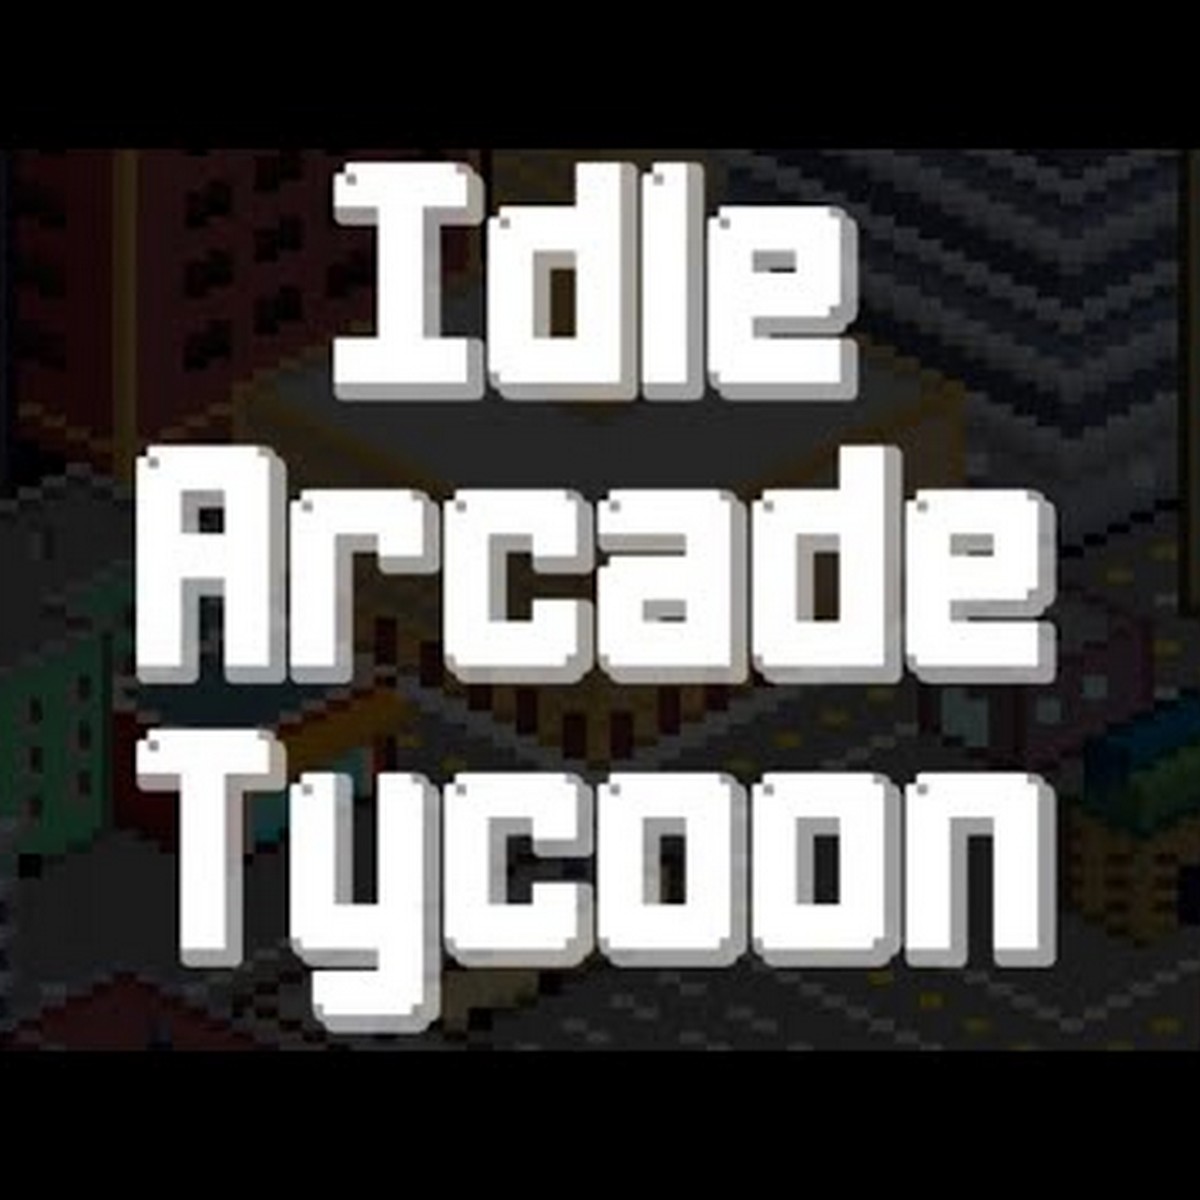 Guía Idle Arcade Tycoon: Consejos y Trucos para construir el mejor arcade